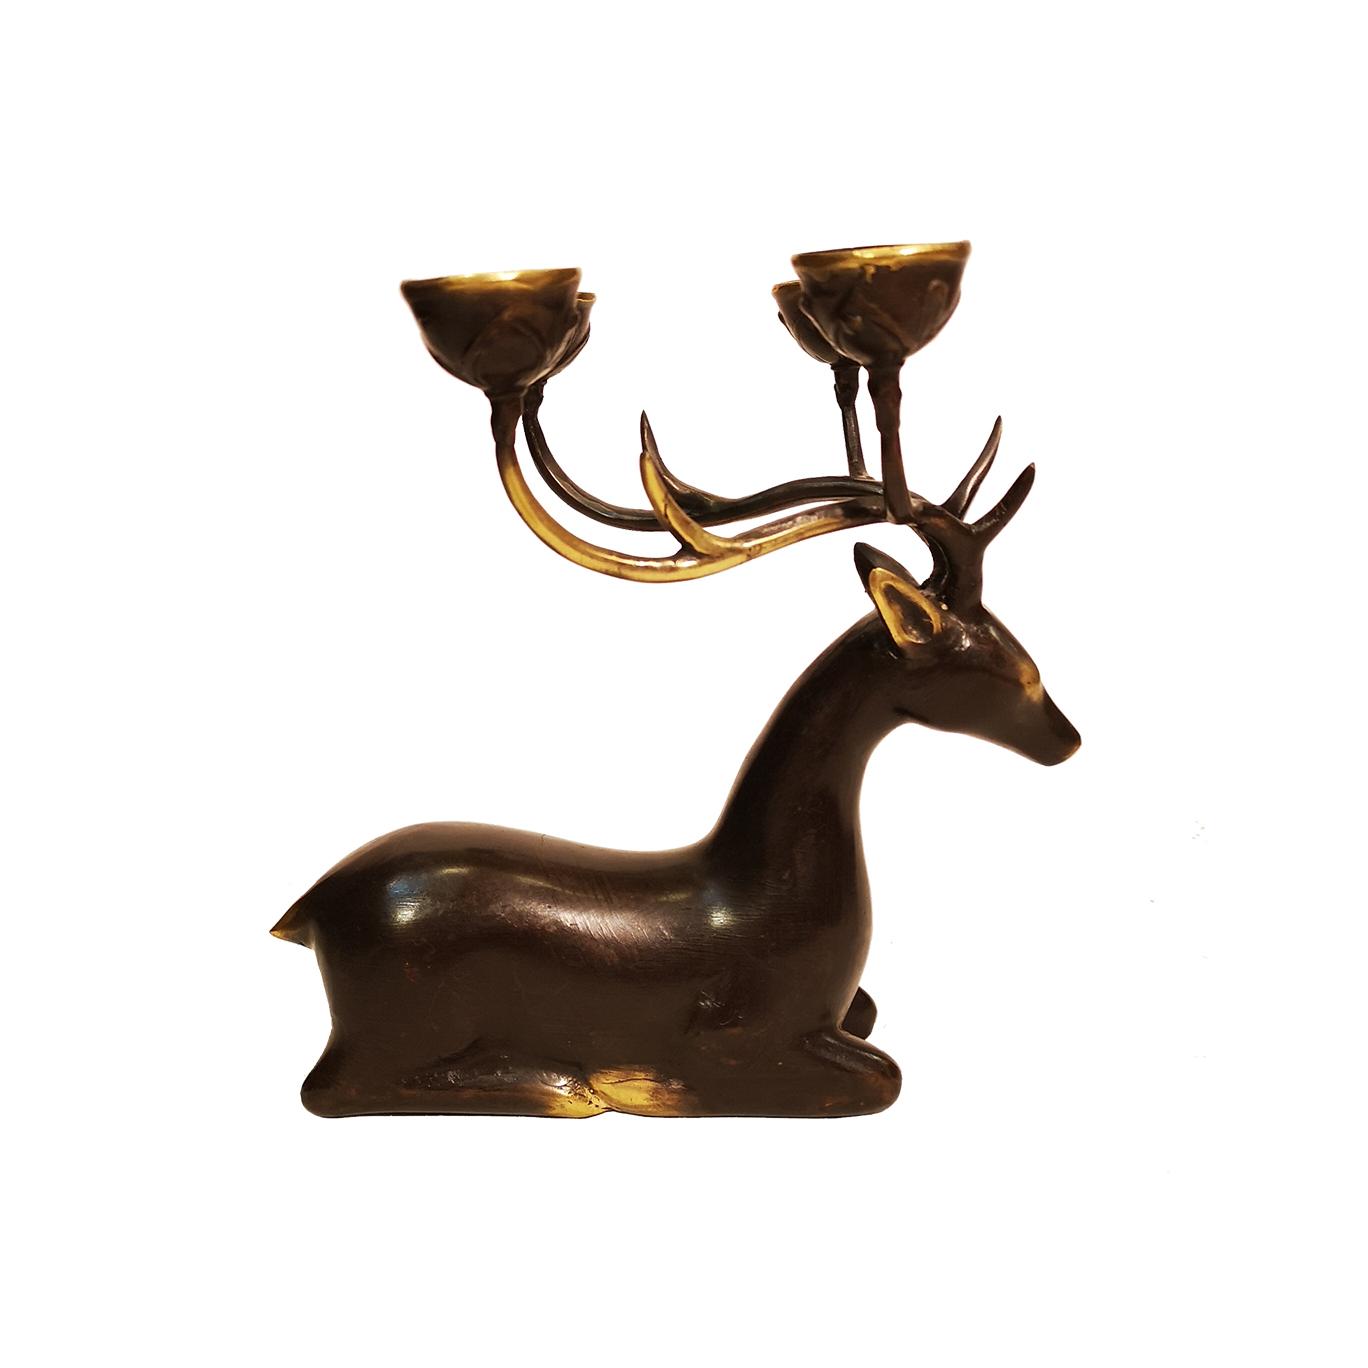 Ciervo - Candelabro de bronce